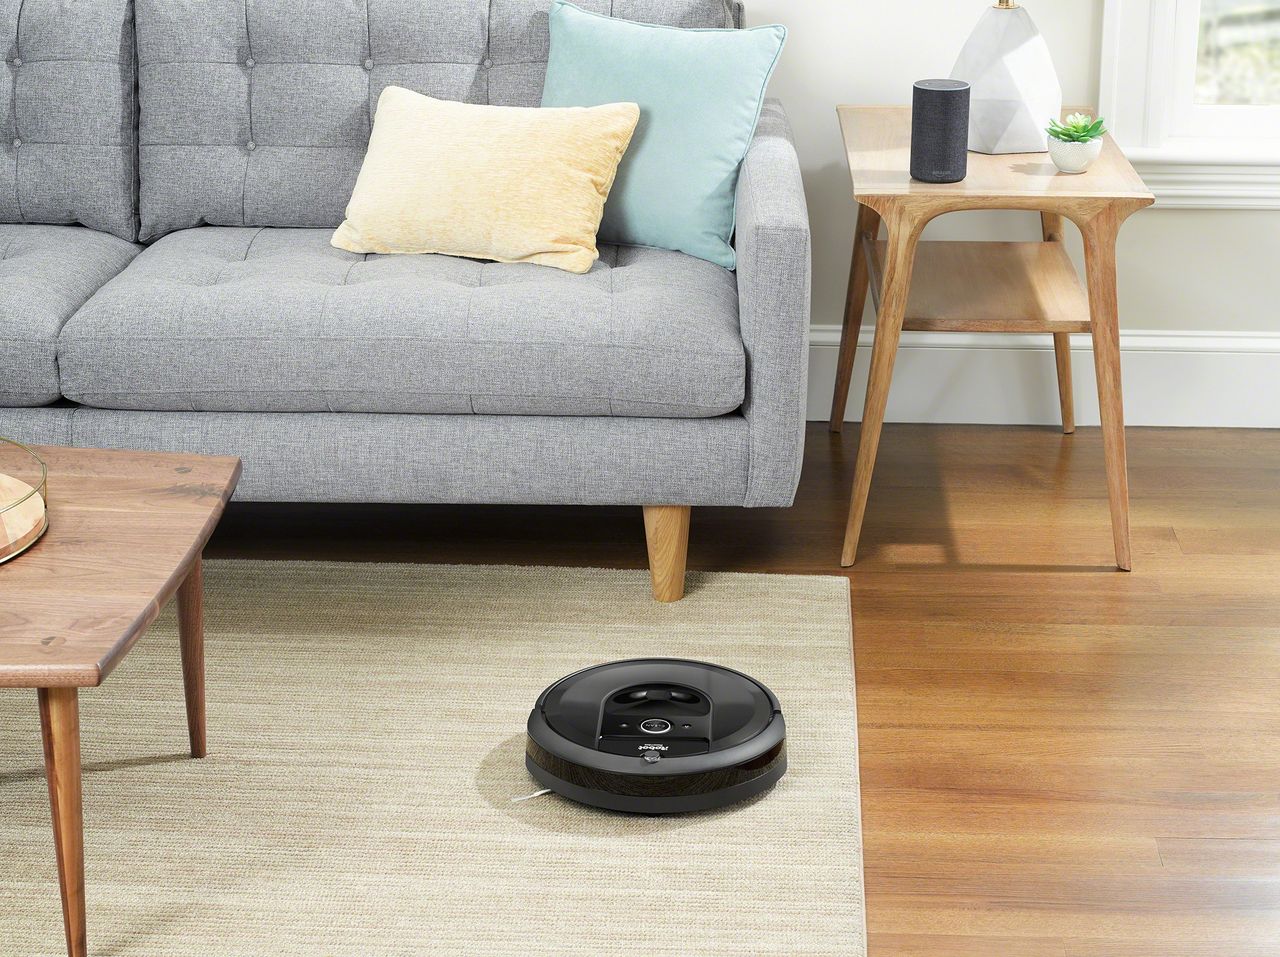 Robot sprzątający Roomba to urządzenie o niewielkich rozmiarach i ogromnych możliwościach